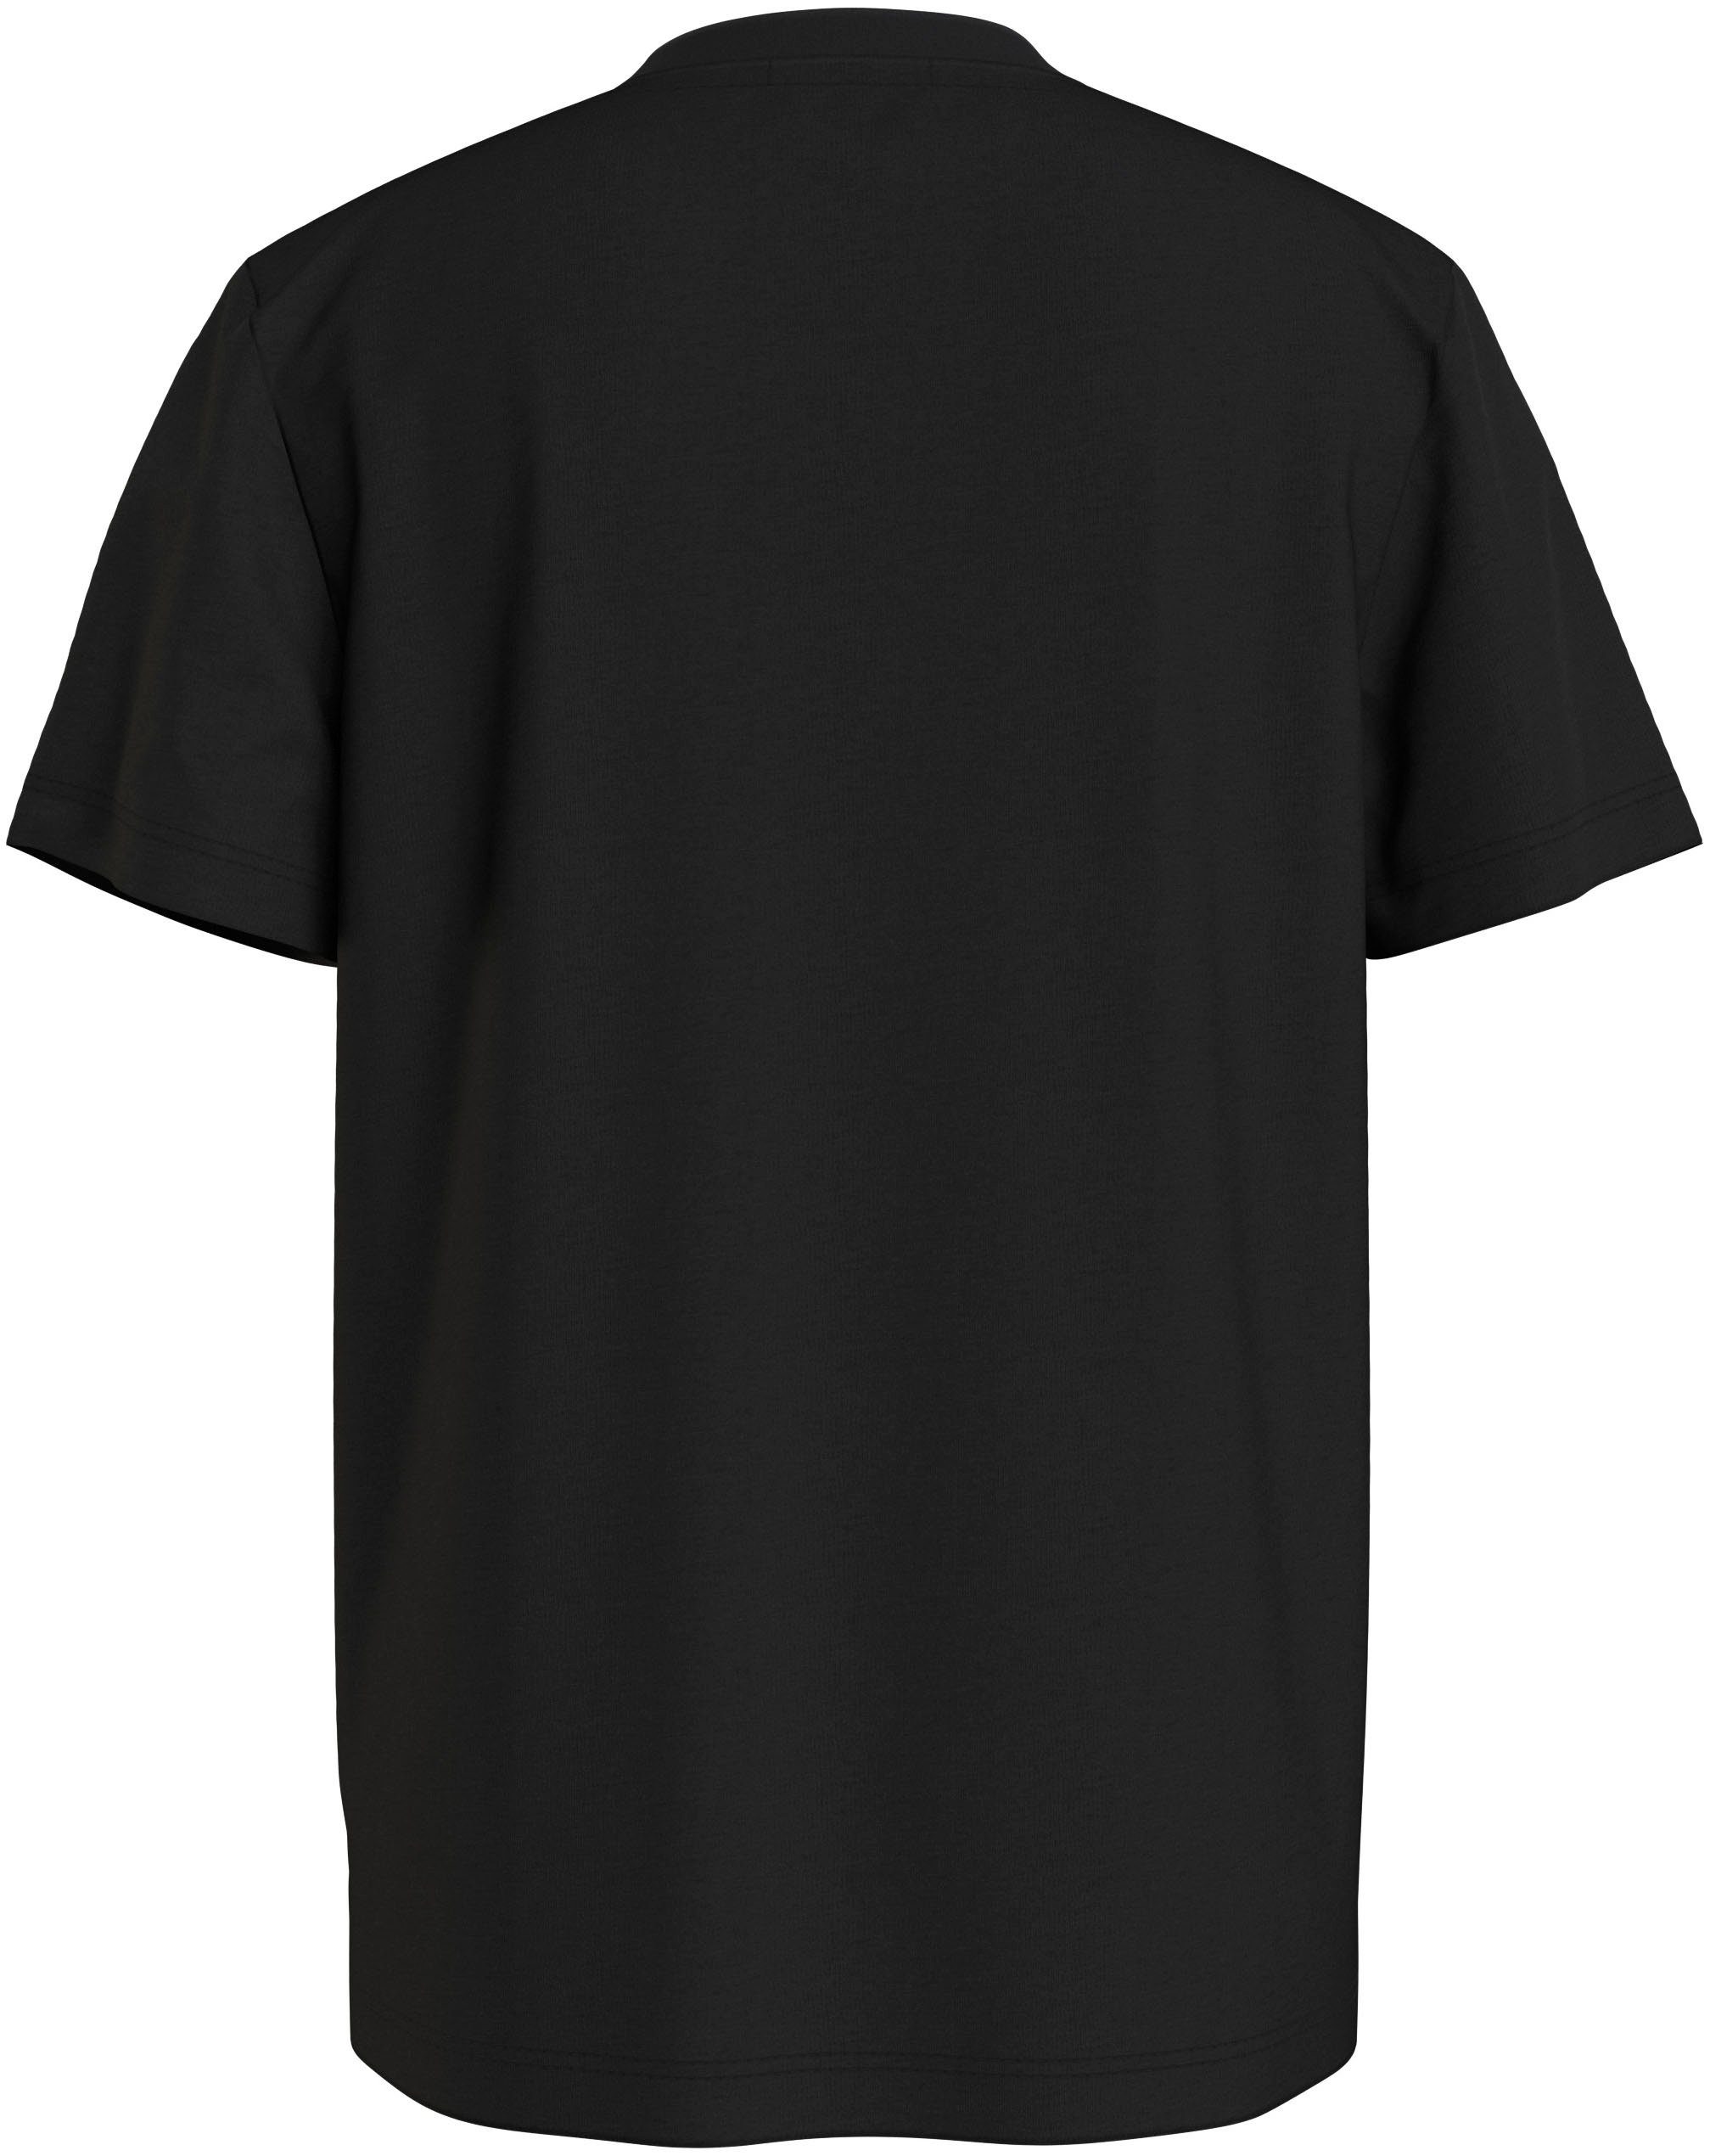 Calvin Klein Jeans Ck SS T-SHIRT Black CK MONOGRAM T-Shirt